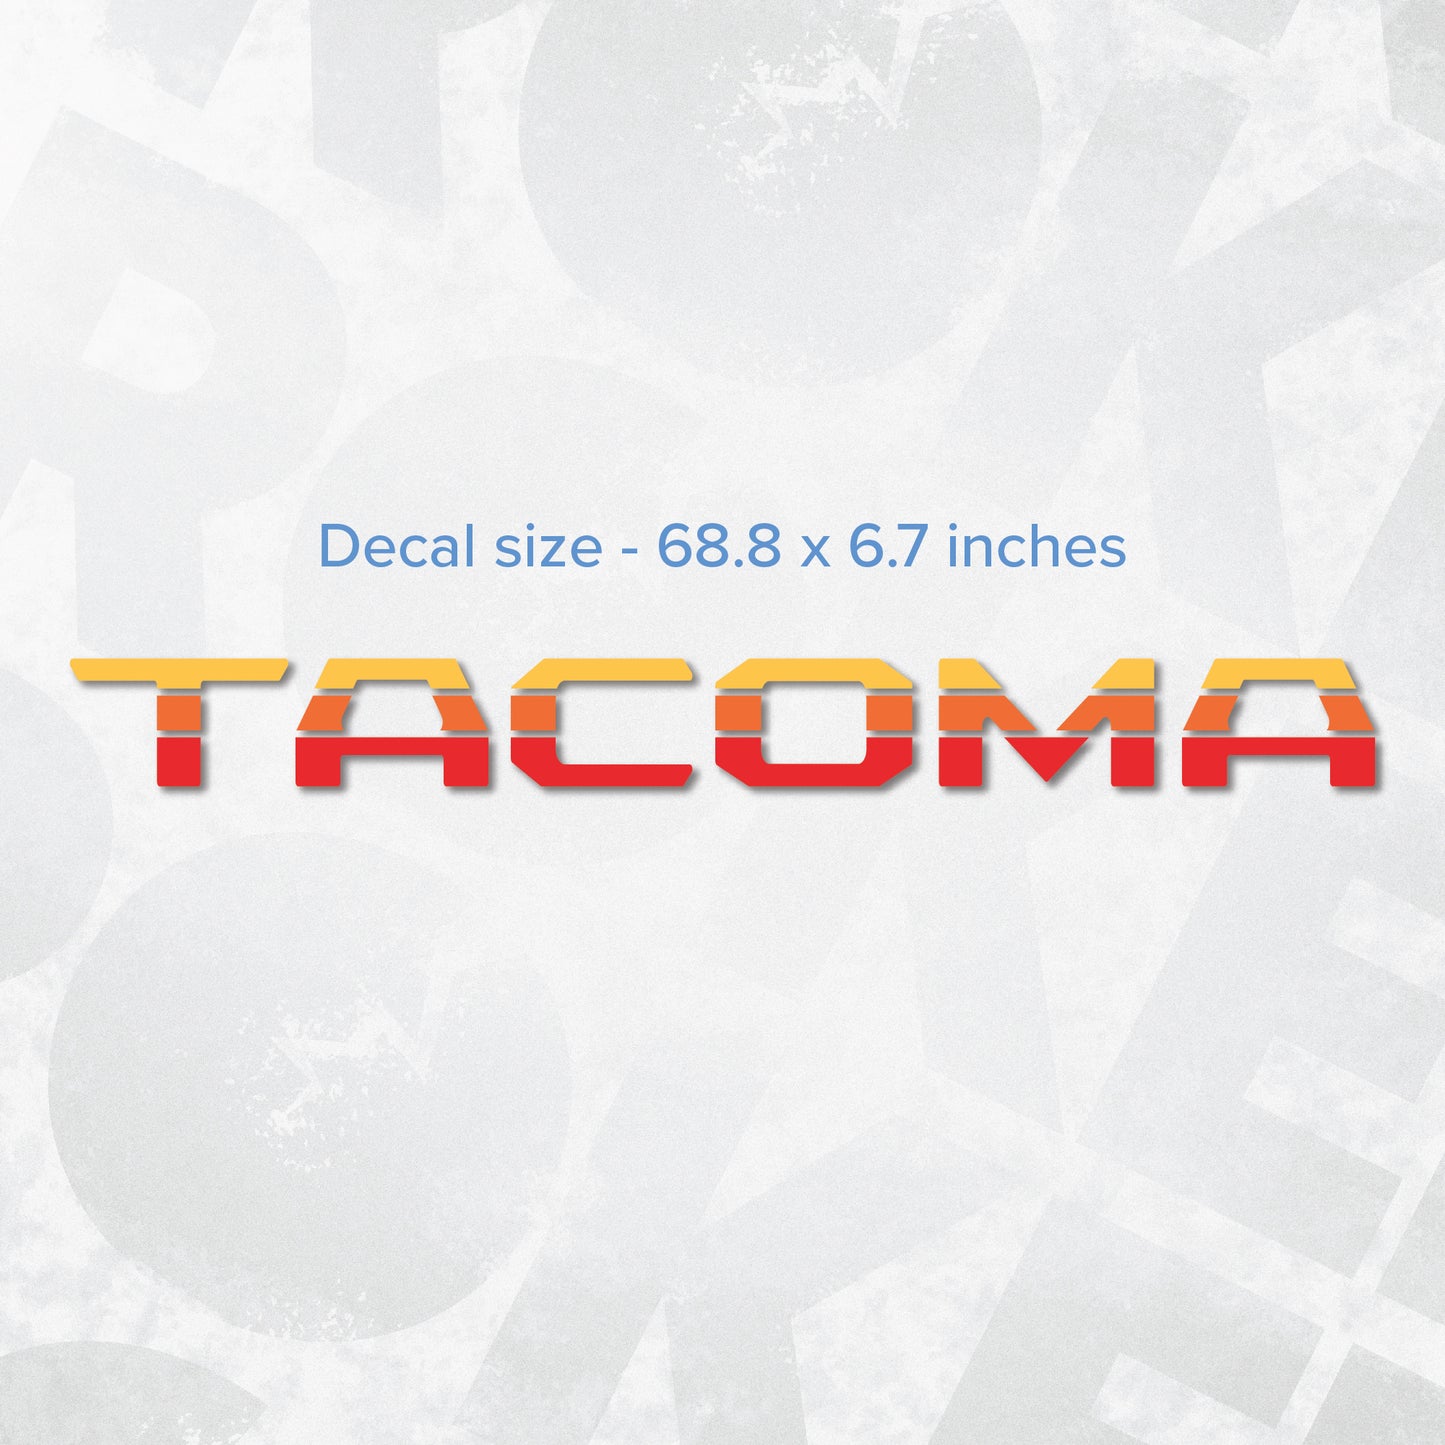 Toyota TACOMA logo decal